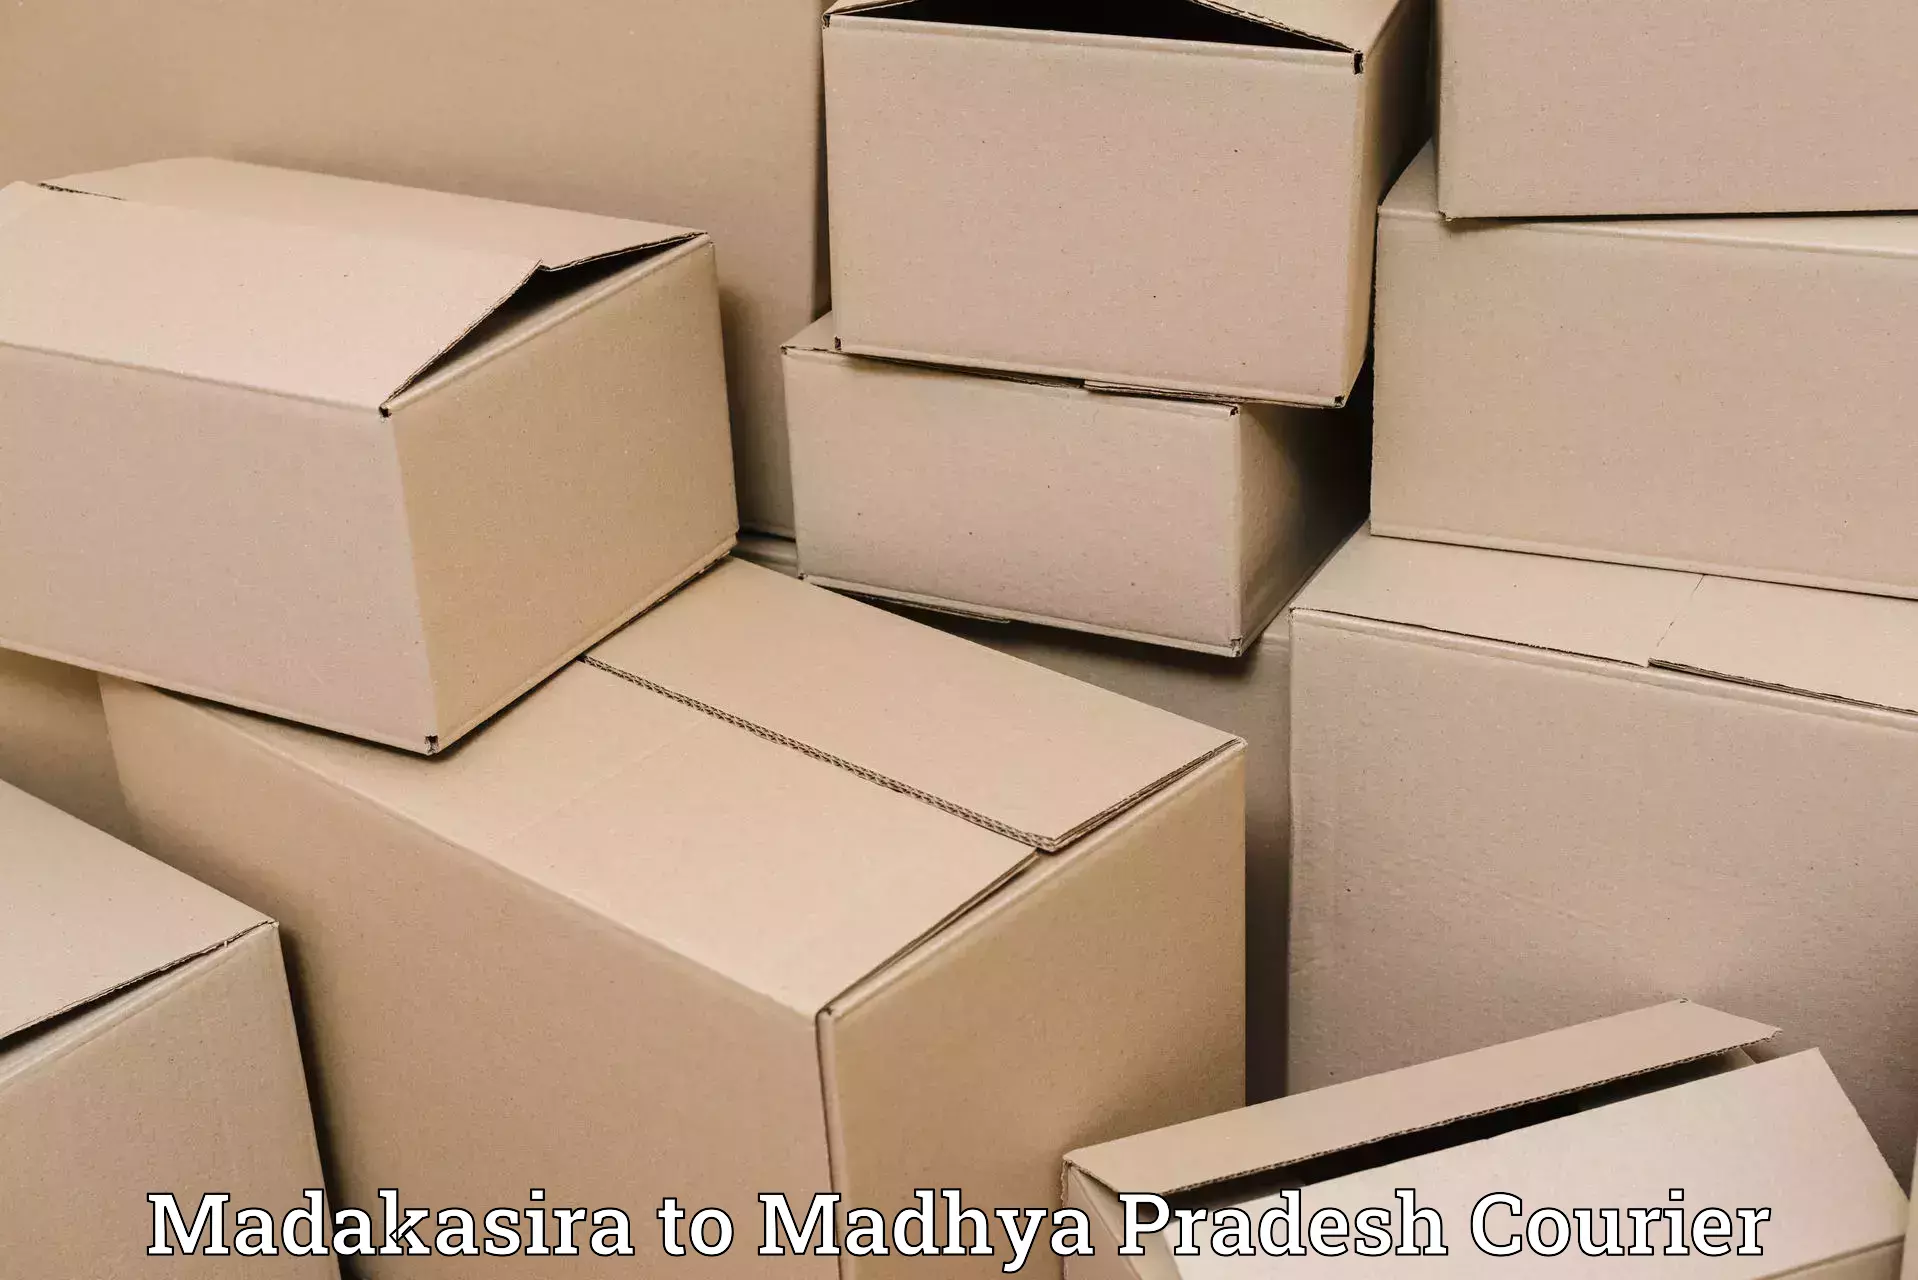 Comprehensive parcel tracking Madakasira to Pachore